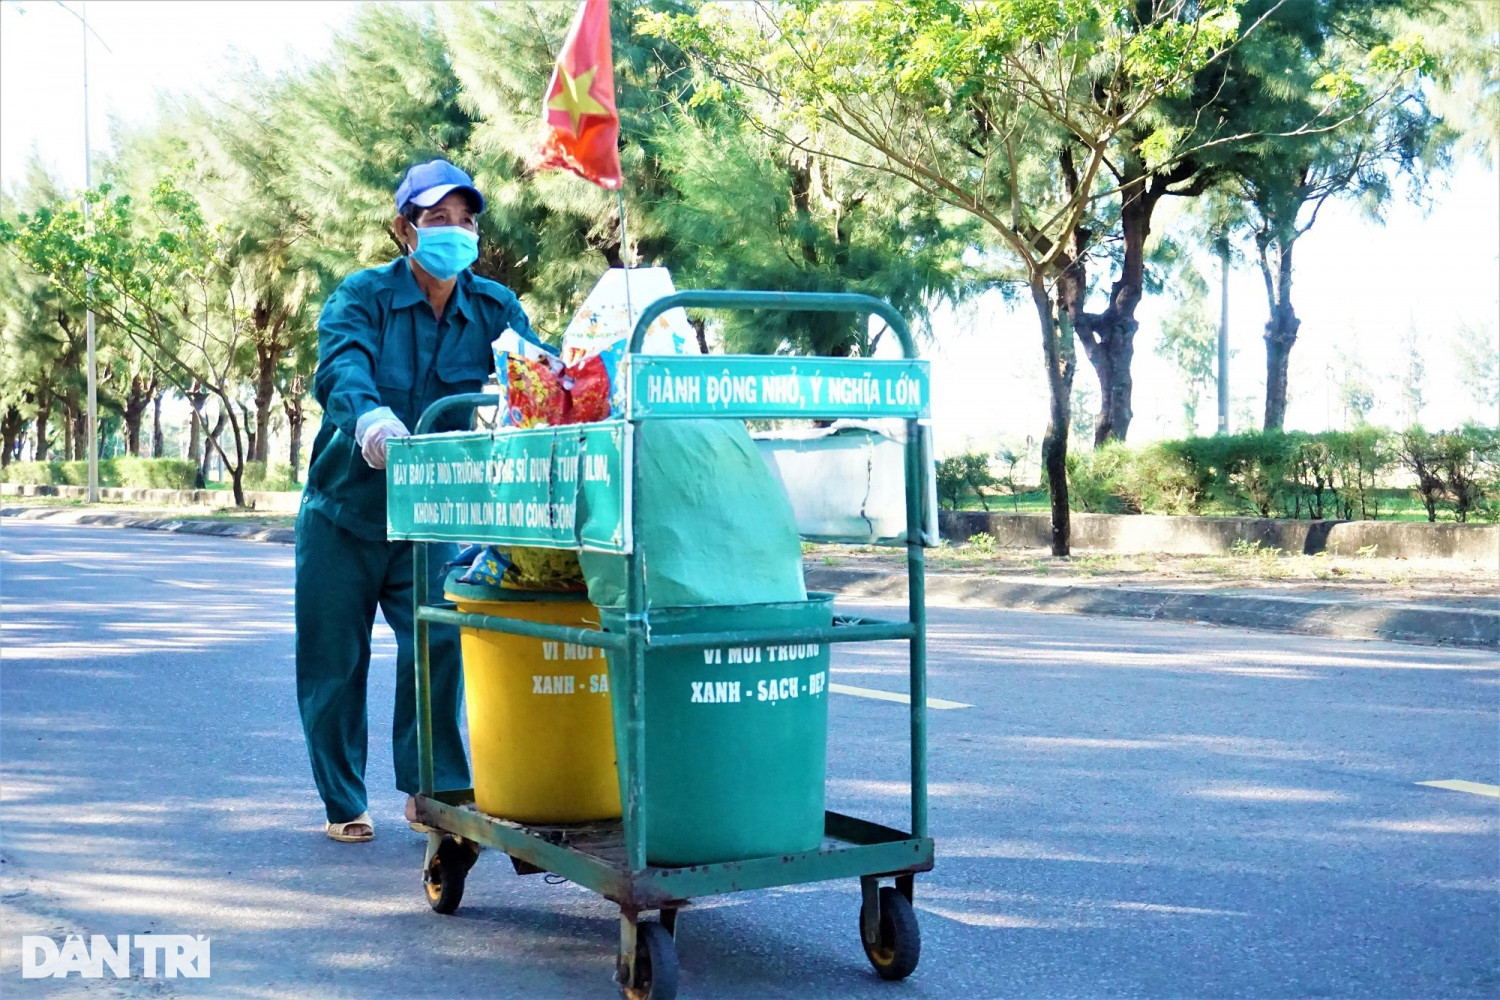 Ông Nguyễn Thương, người được gọi là "ông già rác" ở phố cổ Hội An.